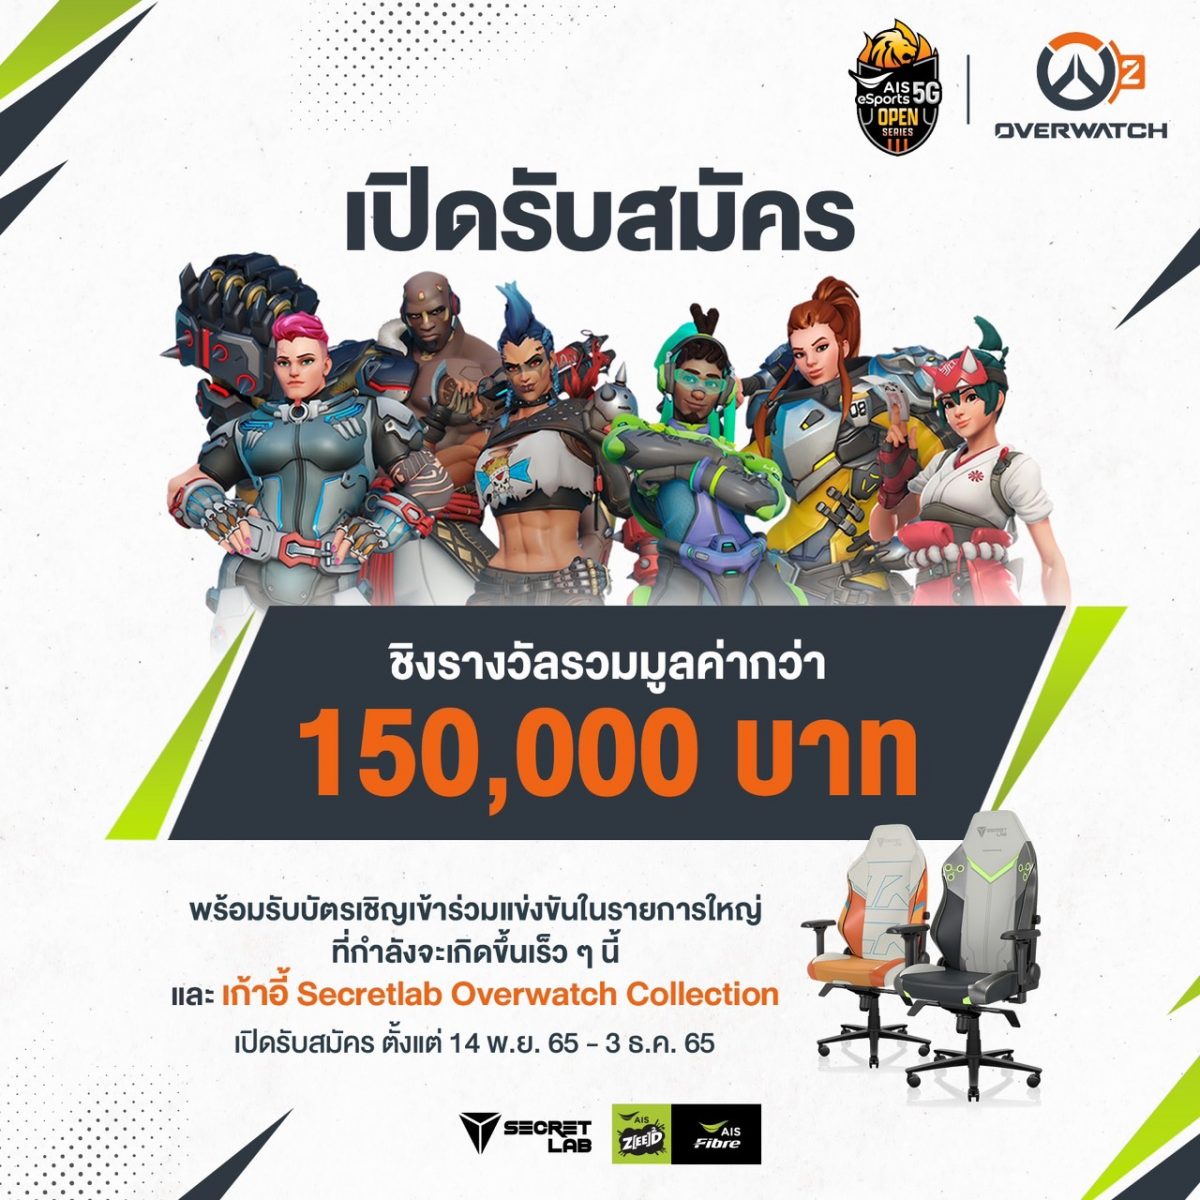 AIS eSports เปิดสังเวียนเอาใจเกมเมอร์สายบู๊ ครั้งแรกในไทย กับการแข่งขันอีสปอร์ตบนเวทีสุดยิ่งใหญ่